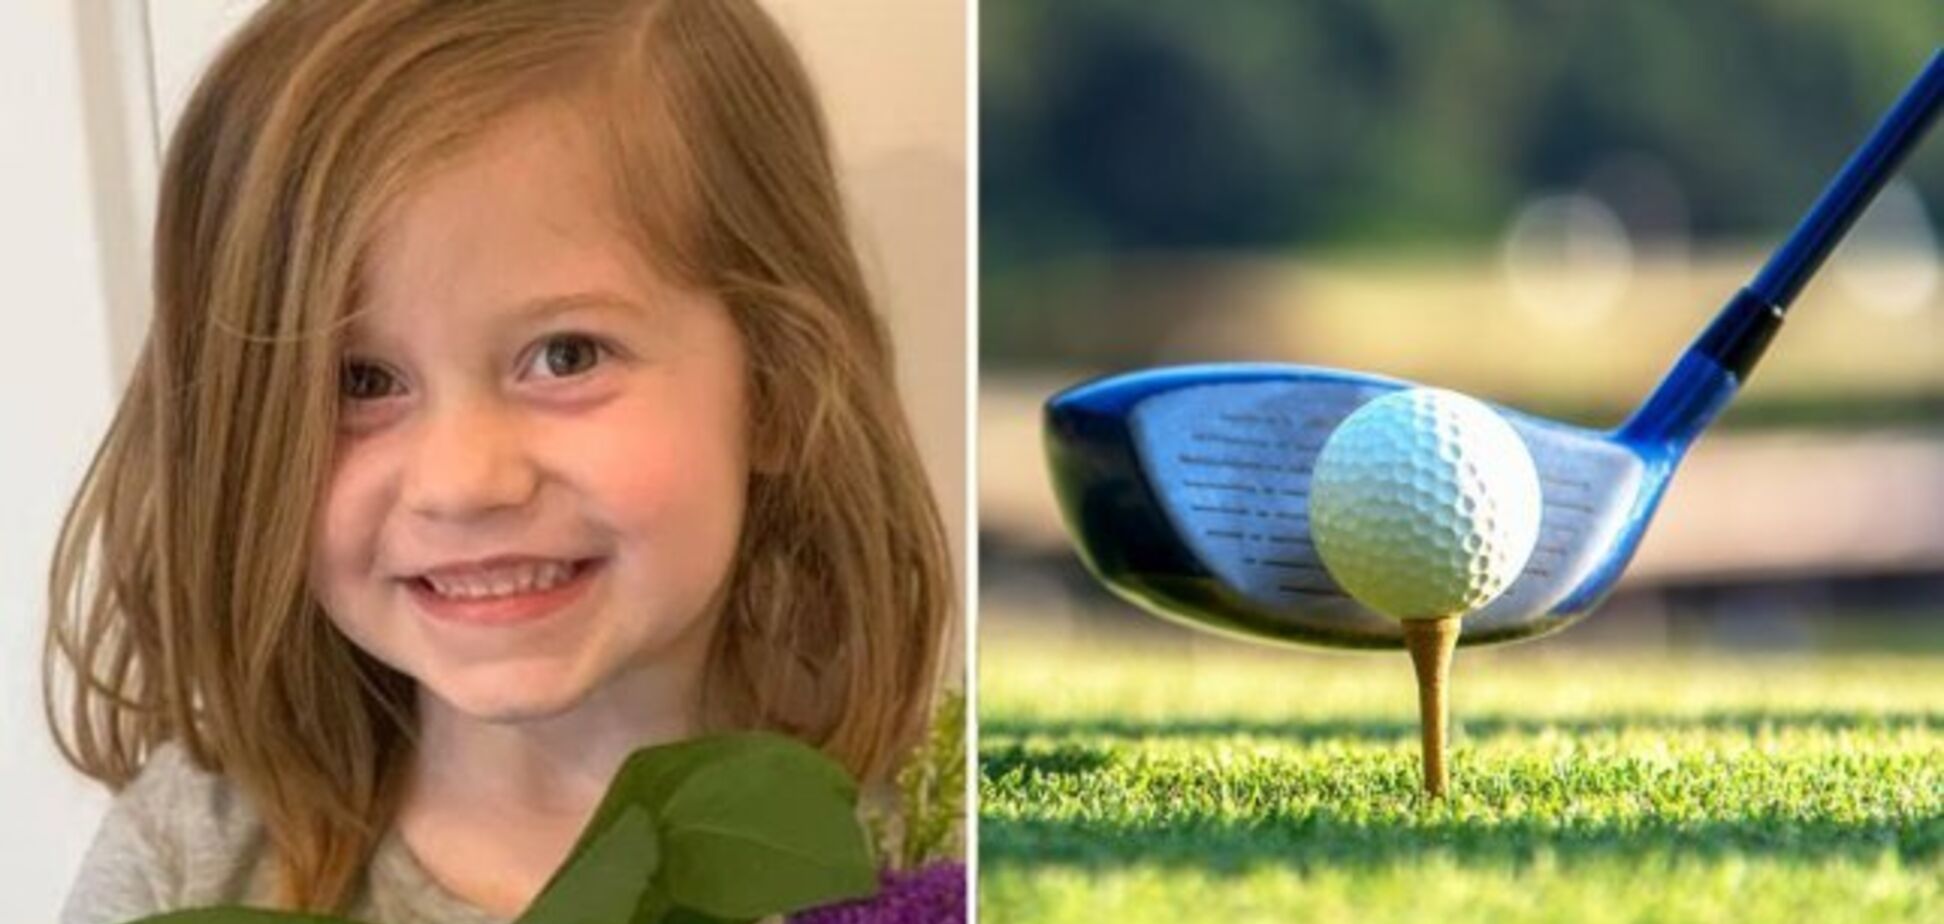 Отец во время игры в гольф случайно убил 6-летнюю дочь